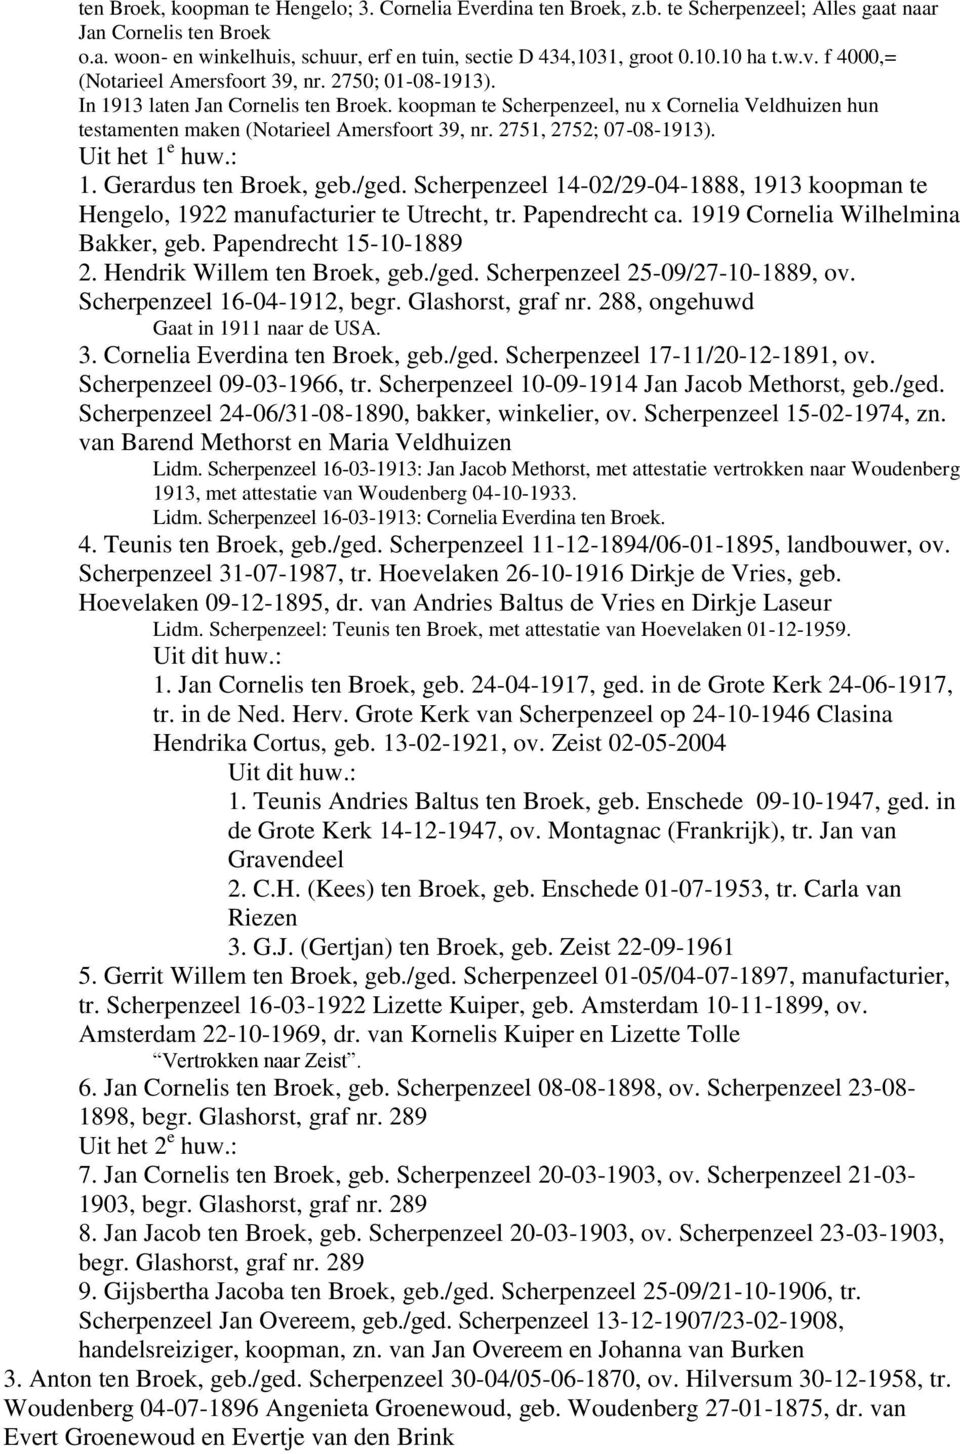 koopman te Scherpenzeel, nu x Cornelia Veldhuizen hun testamenten maken (Notarieel Amersfoort 39, nr. 2751, 2752; 07-08-1913). Uit het 1 e huw.: 1. Gerardus ten Broek, geb./ged.